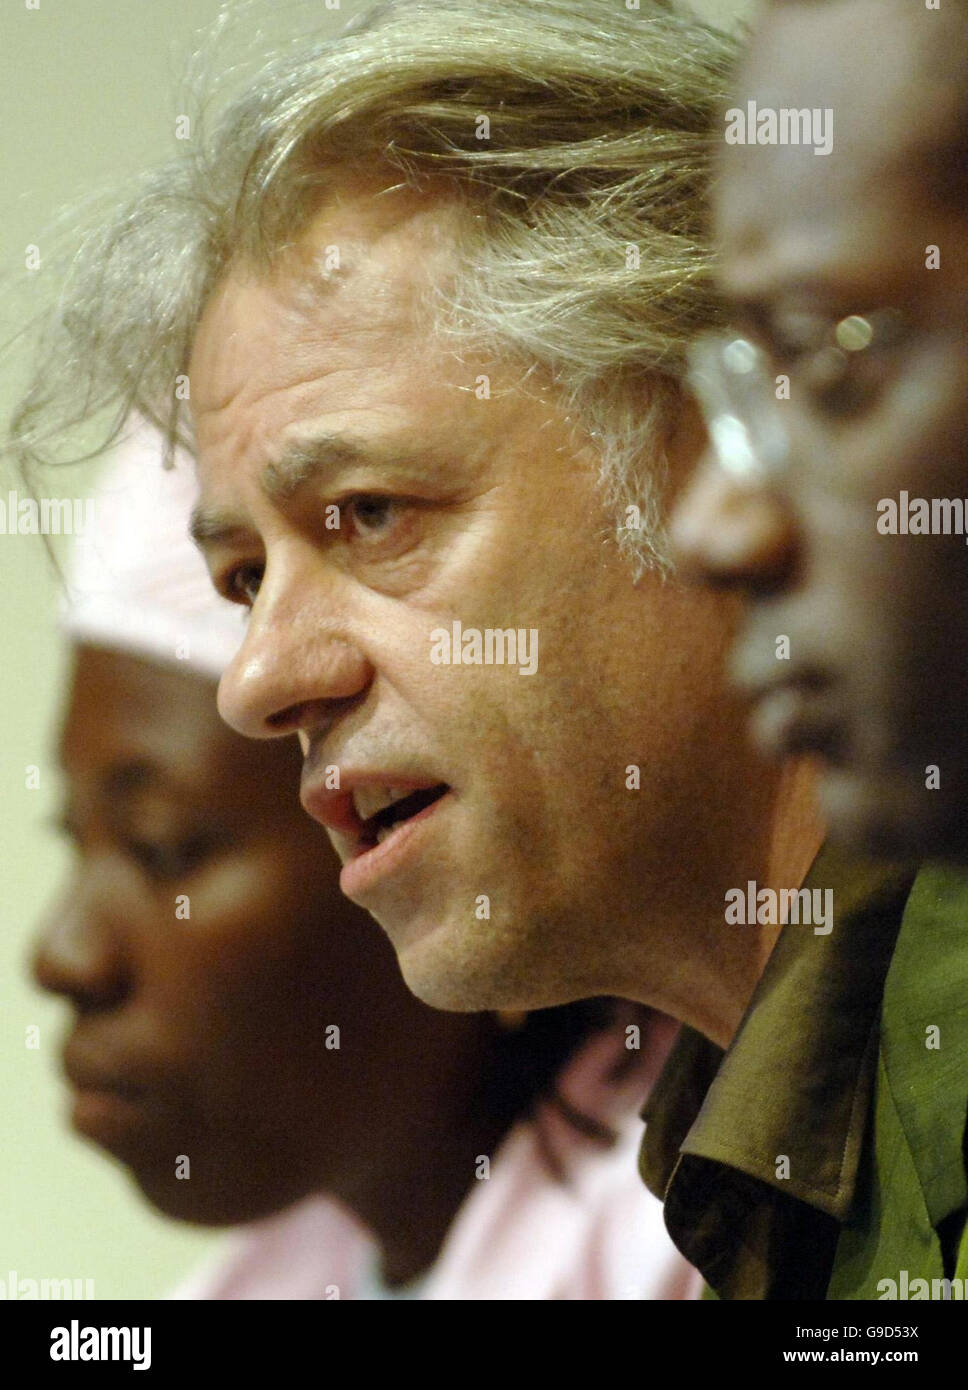 Bob Geldof (centro) in occasione di una conferenza stampa per annunciare la pubblicazione del Data Report 2006, un riassunto delle promesse fatte ai Paesi G8 in Africa in occasione del vertice G8 dello scorso anno in occasione di una conferenza stampa alla Millbank Tower, nel centro di Londra. Foto Stock